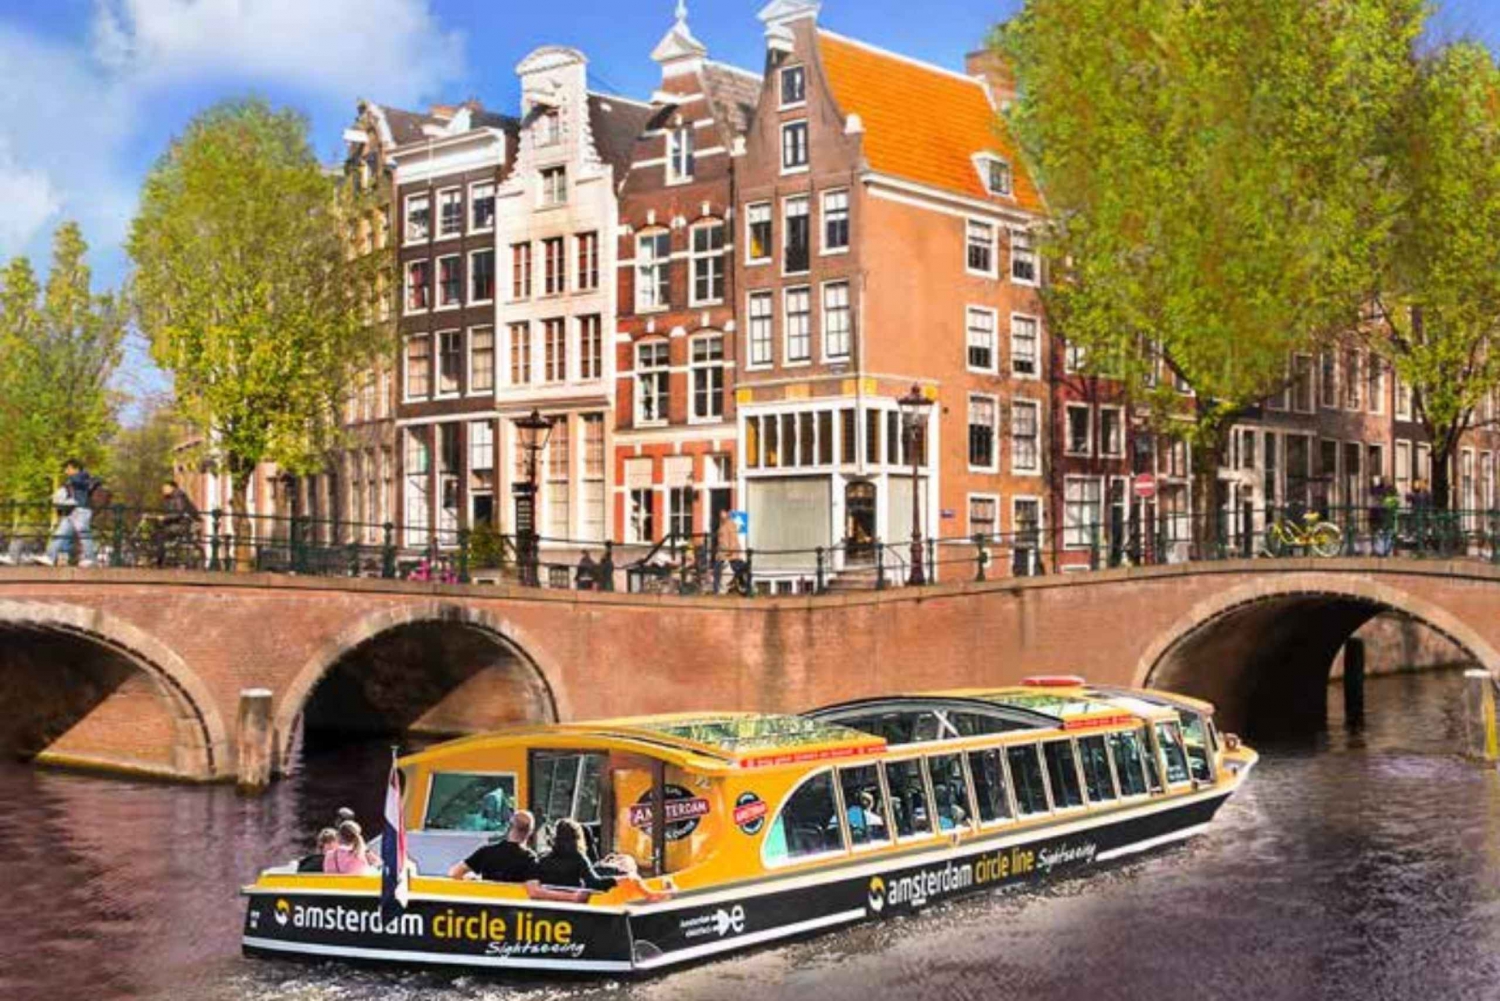 Amsterdam Pizza Cruise - En fusjon av mat og sightseeing